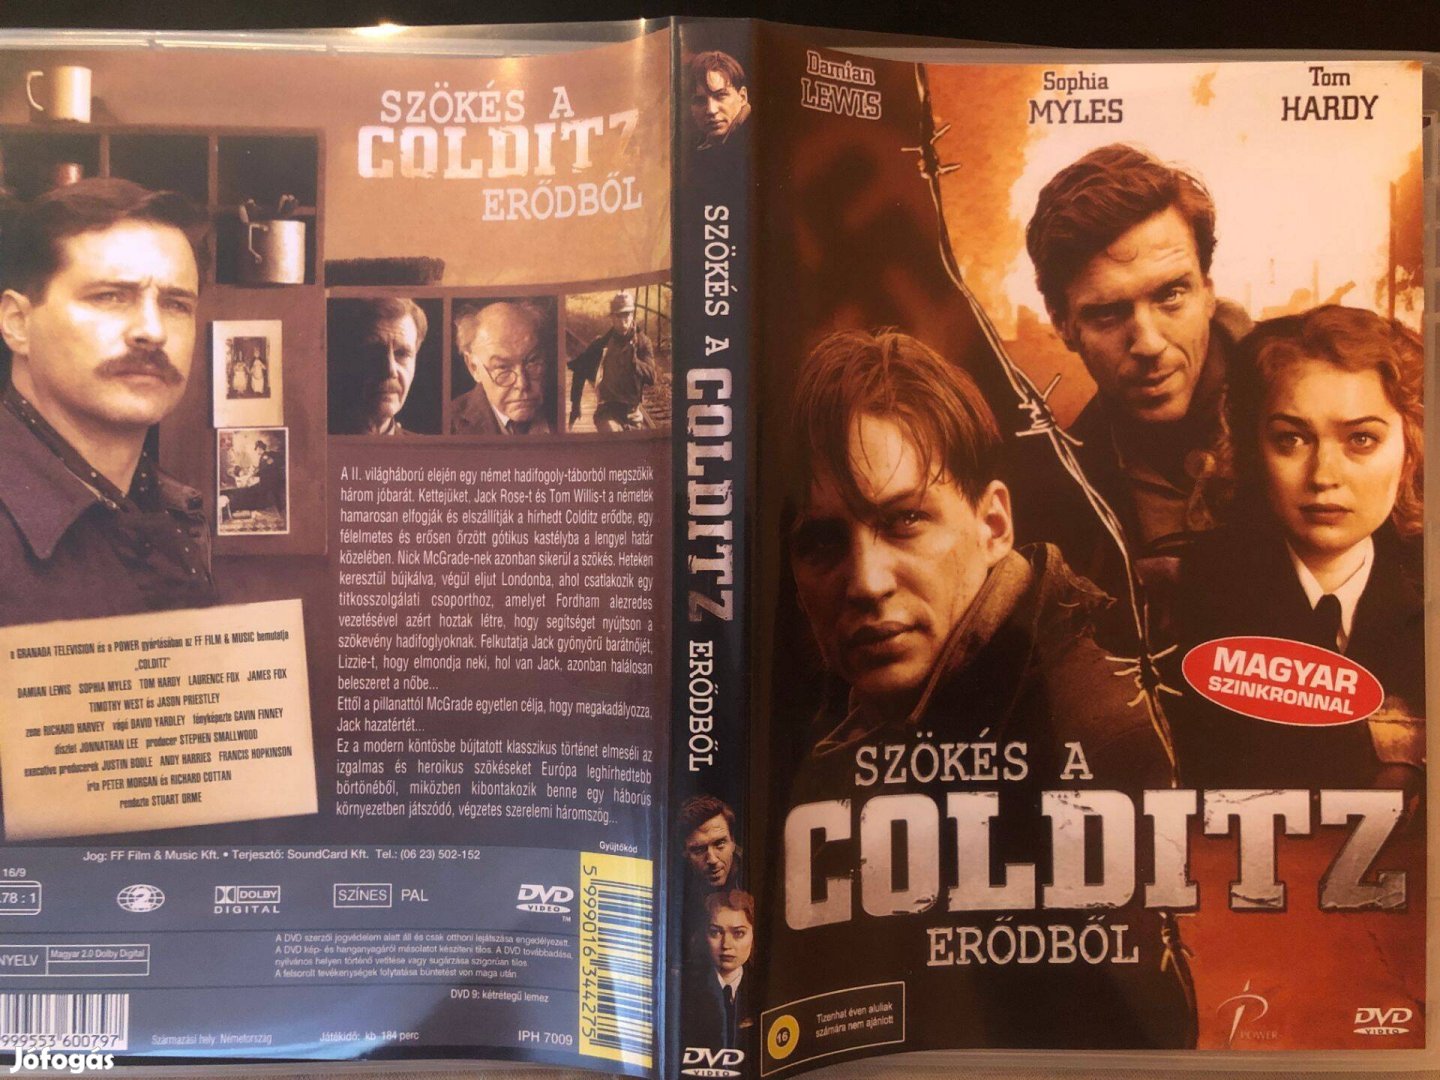 Szökés a Colditz erődből (karcmentes, Damian Lewis, Tom Hardy) DVD